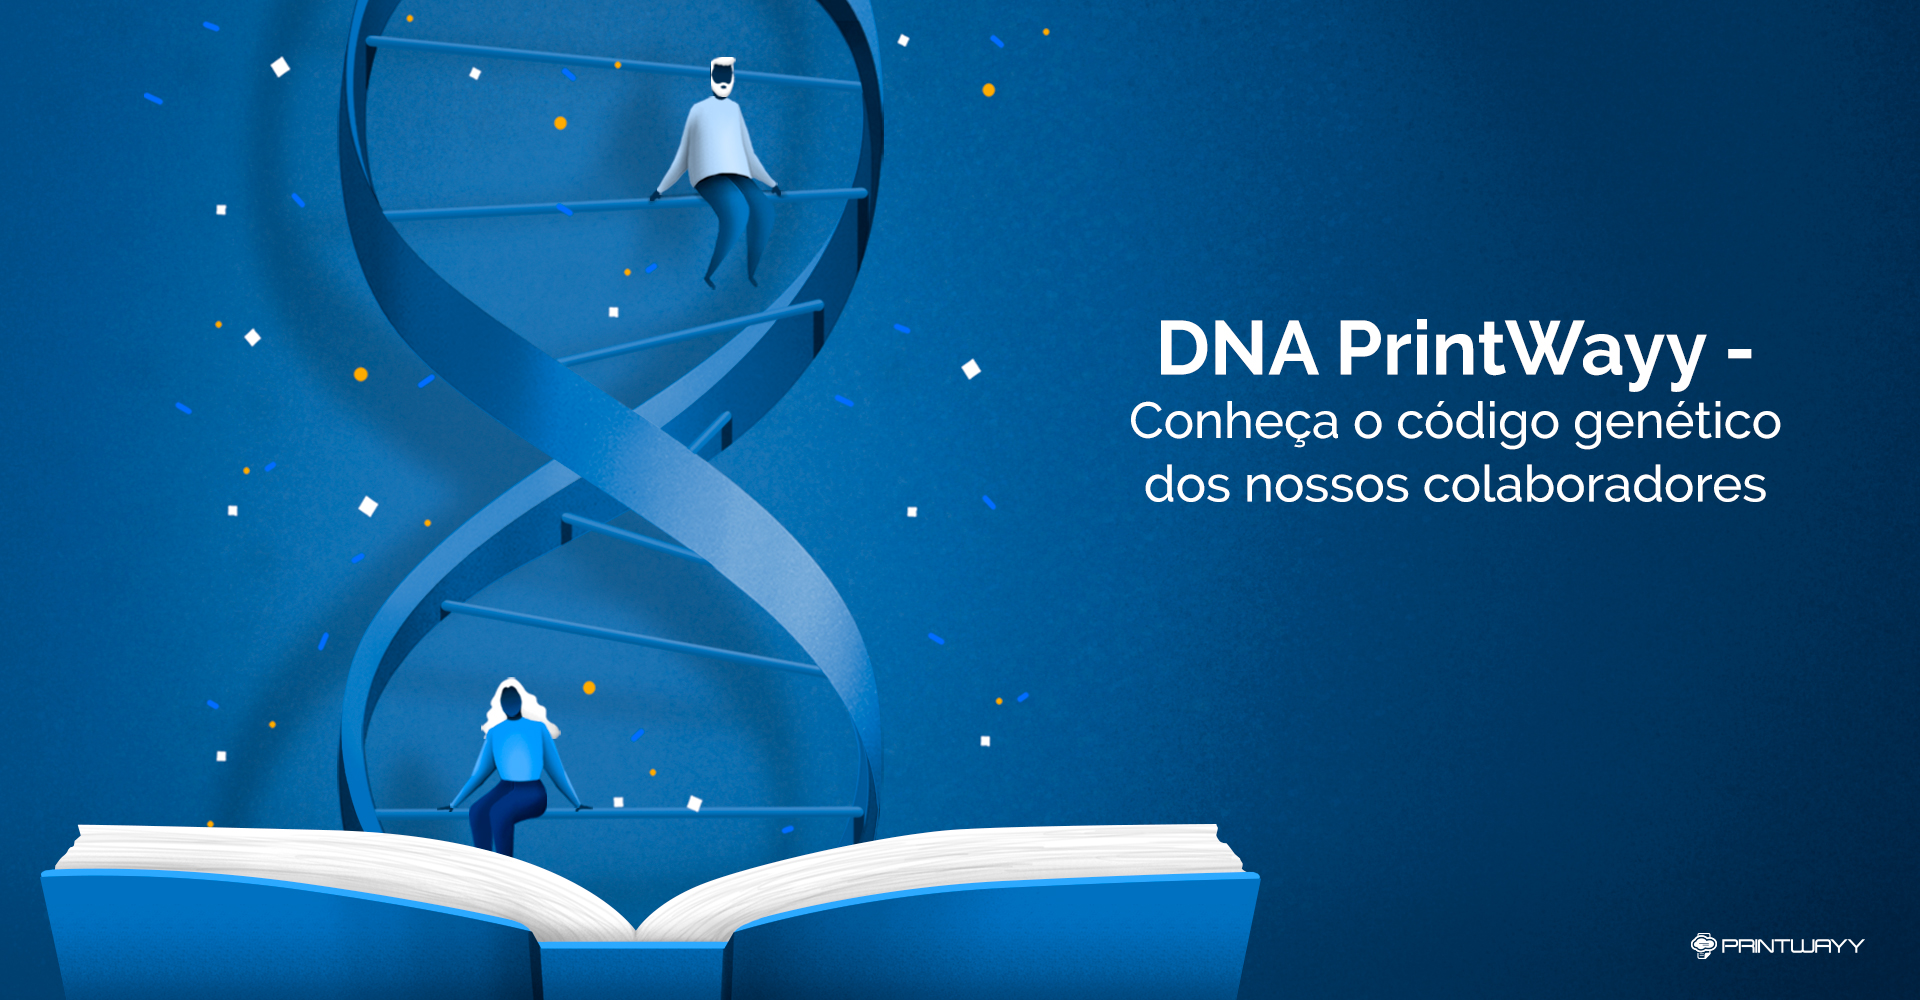 Ilustração de um livro aberto da onde sai uma cadeia de DNA que possui uma menina e um menino sentados em uma de suas linhas, atrás da cadeia de DNA há pontos brancos, amarelos e azuis. A ilustração representa o DNA da PrintWayy.